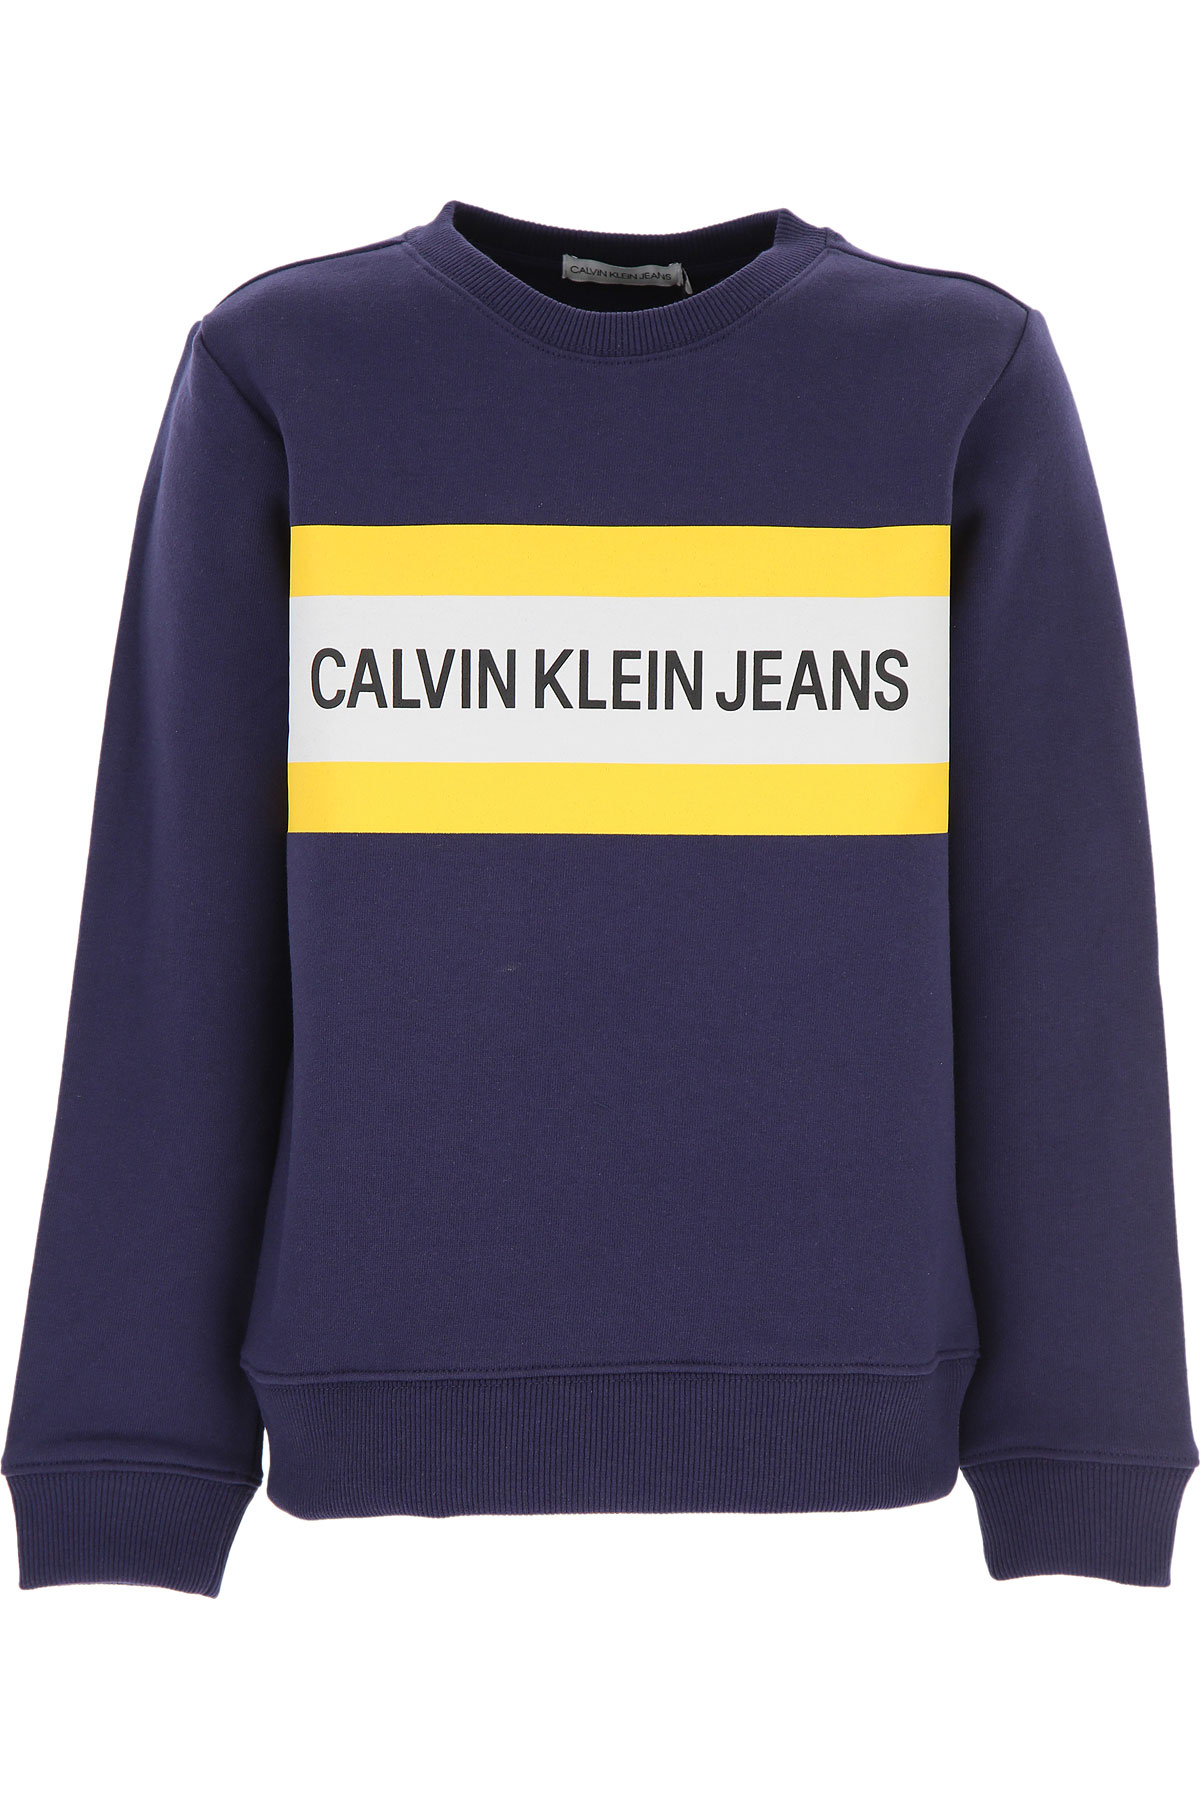 Calvin Klein Kinder Sweatshirt & Kapuzenpullover für Jungen Günstig im Sale, Marine blau, Baumwolle, 2017, 10Y 12Y 14Y 8Y